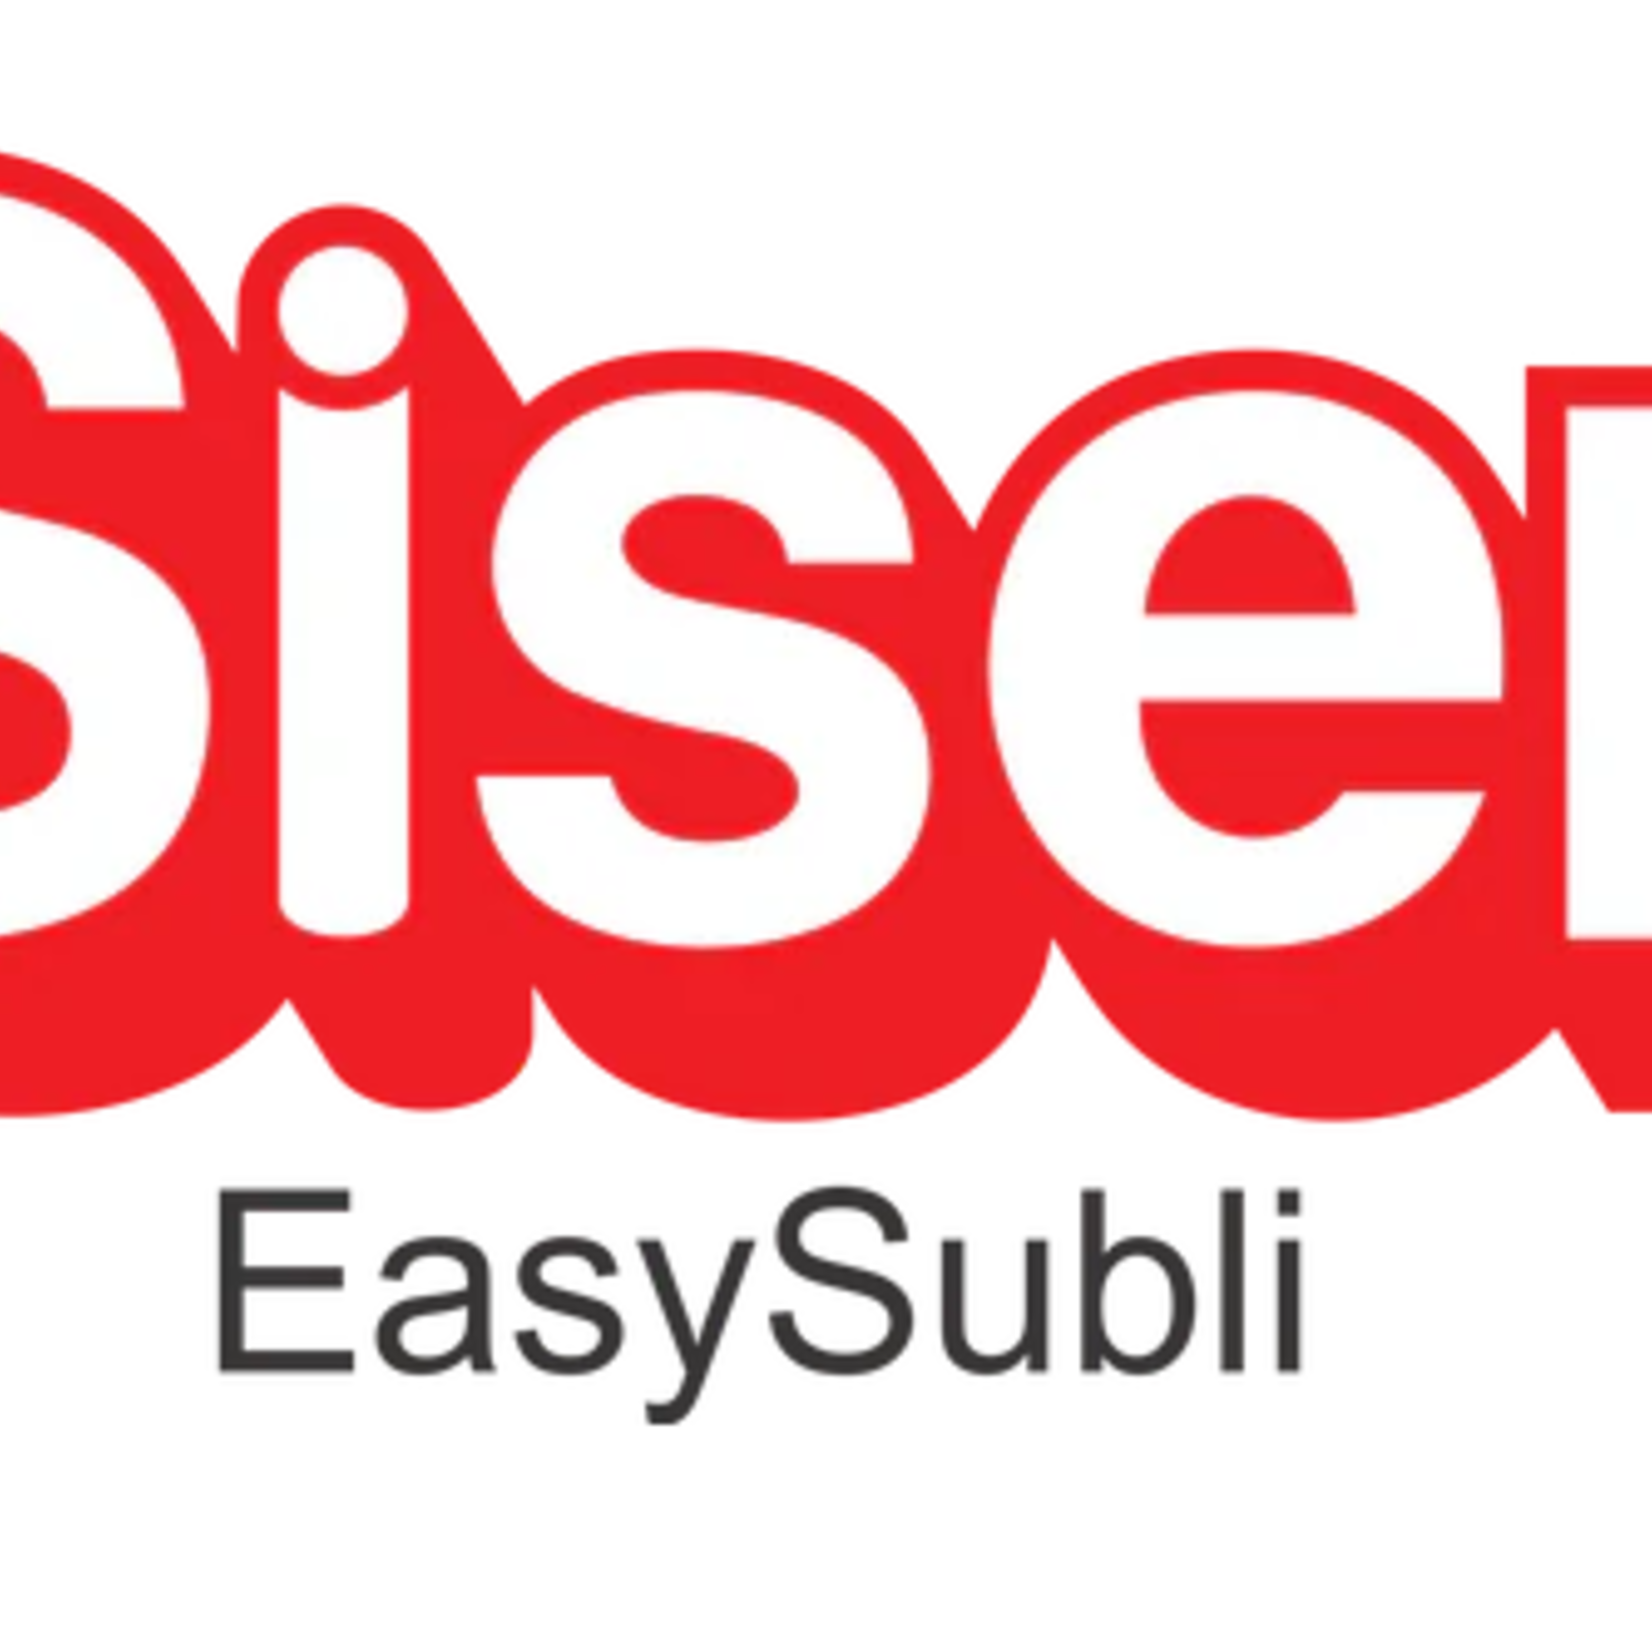 Siser EasySubli Heat Transfer Vinyl 8.4 x 11" Pack of 5